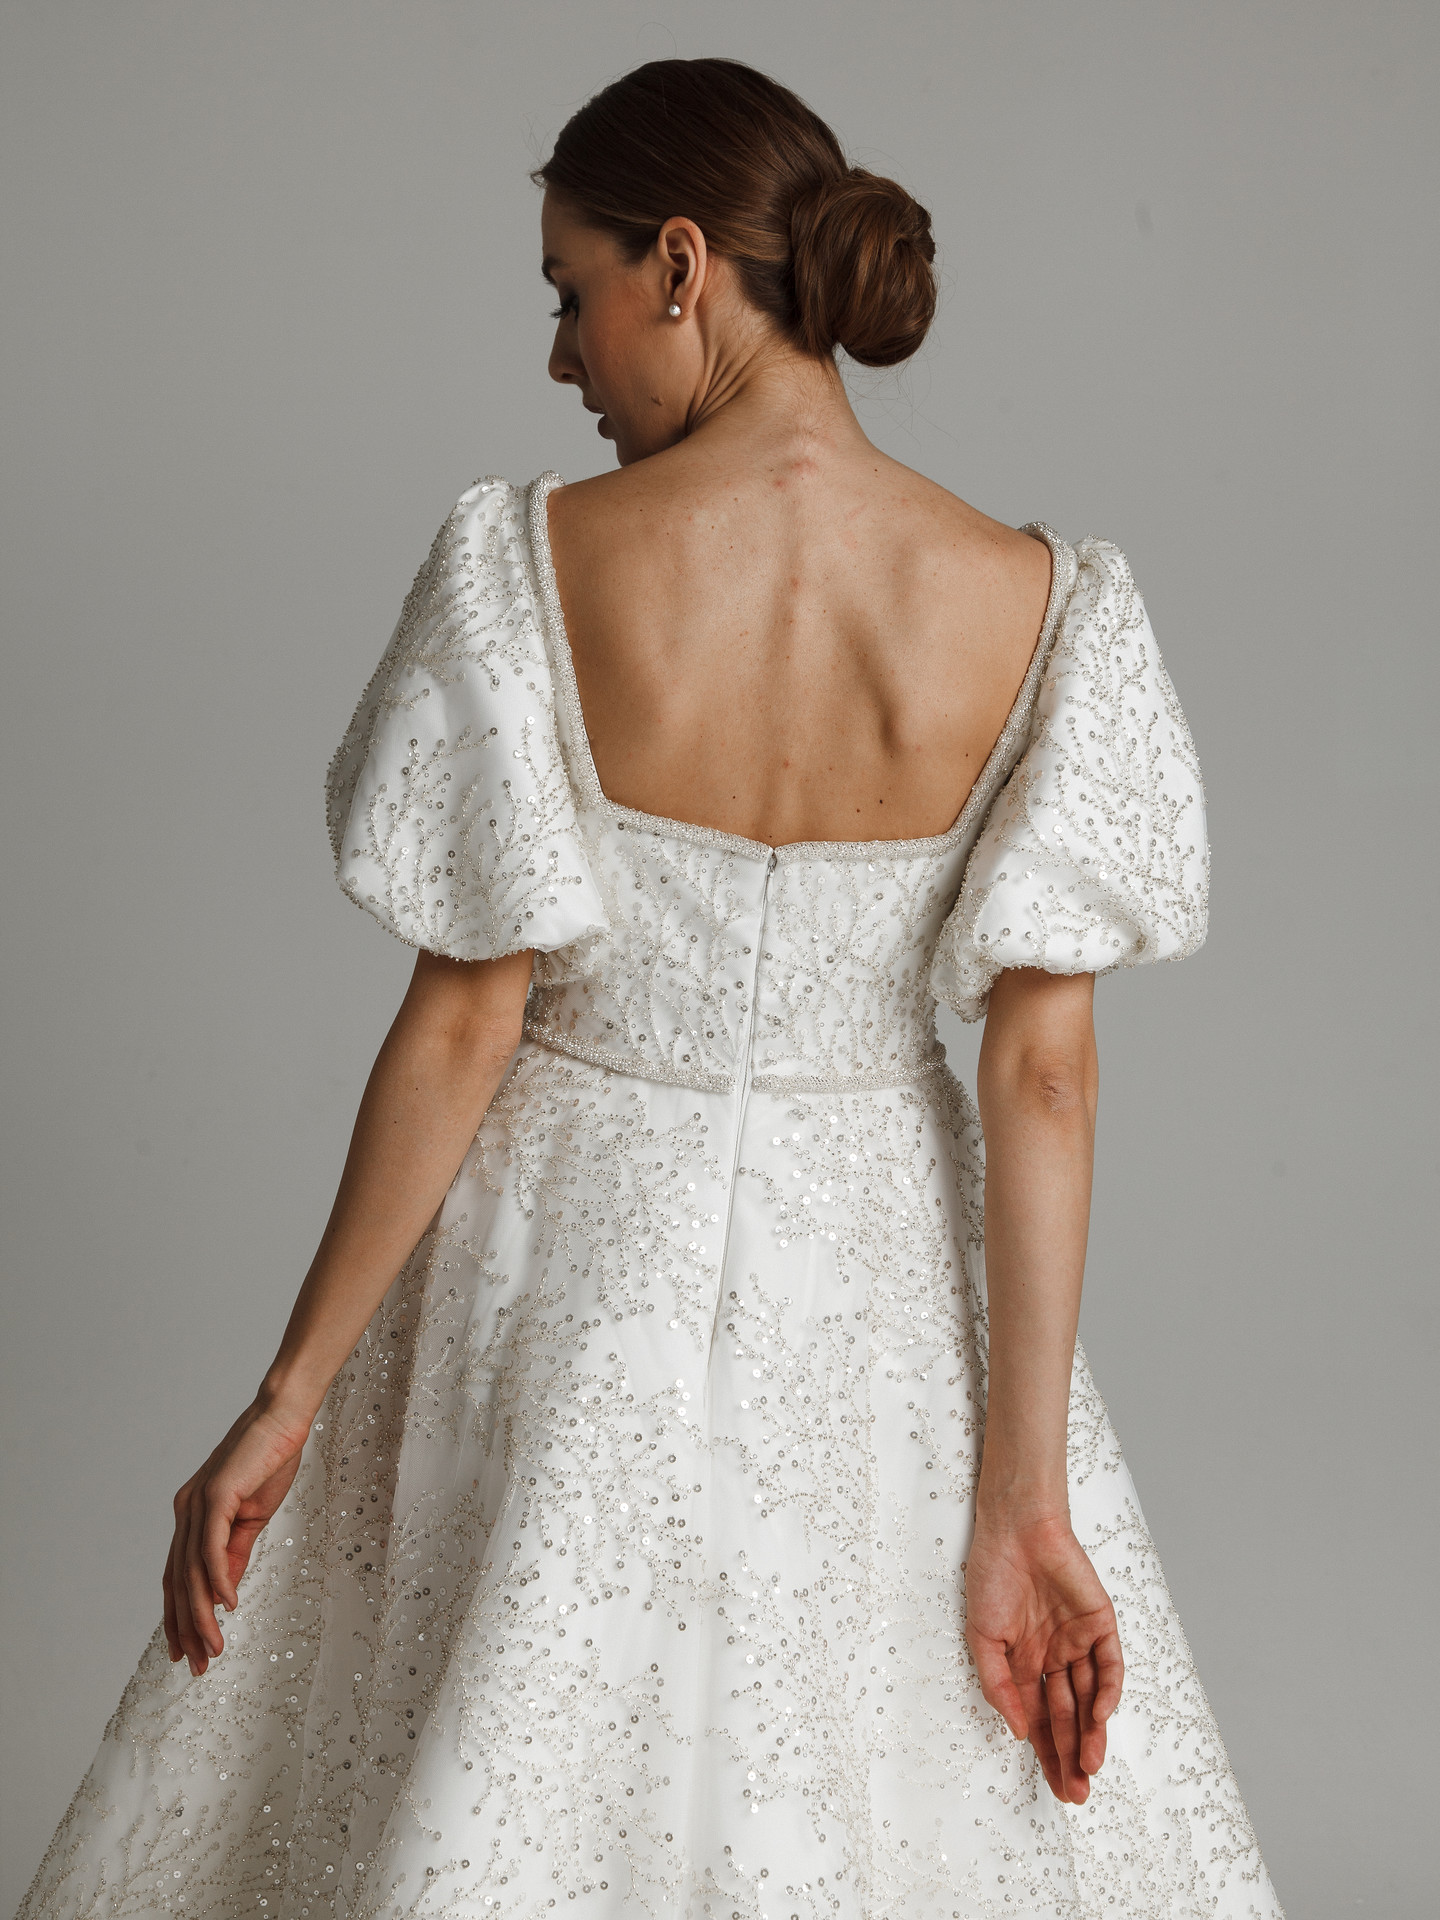 Платье Марта, 2021, одежда, платье, свадебное, молочно-белый, кружево, А-силуэт, шлейф, рукава, архив